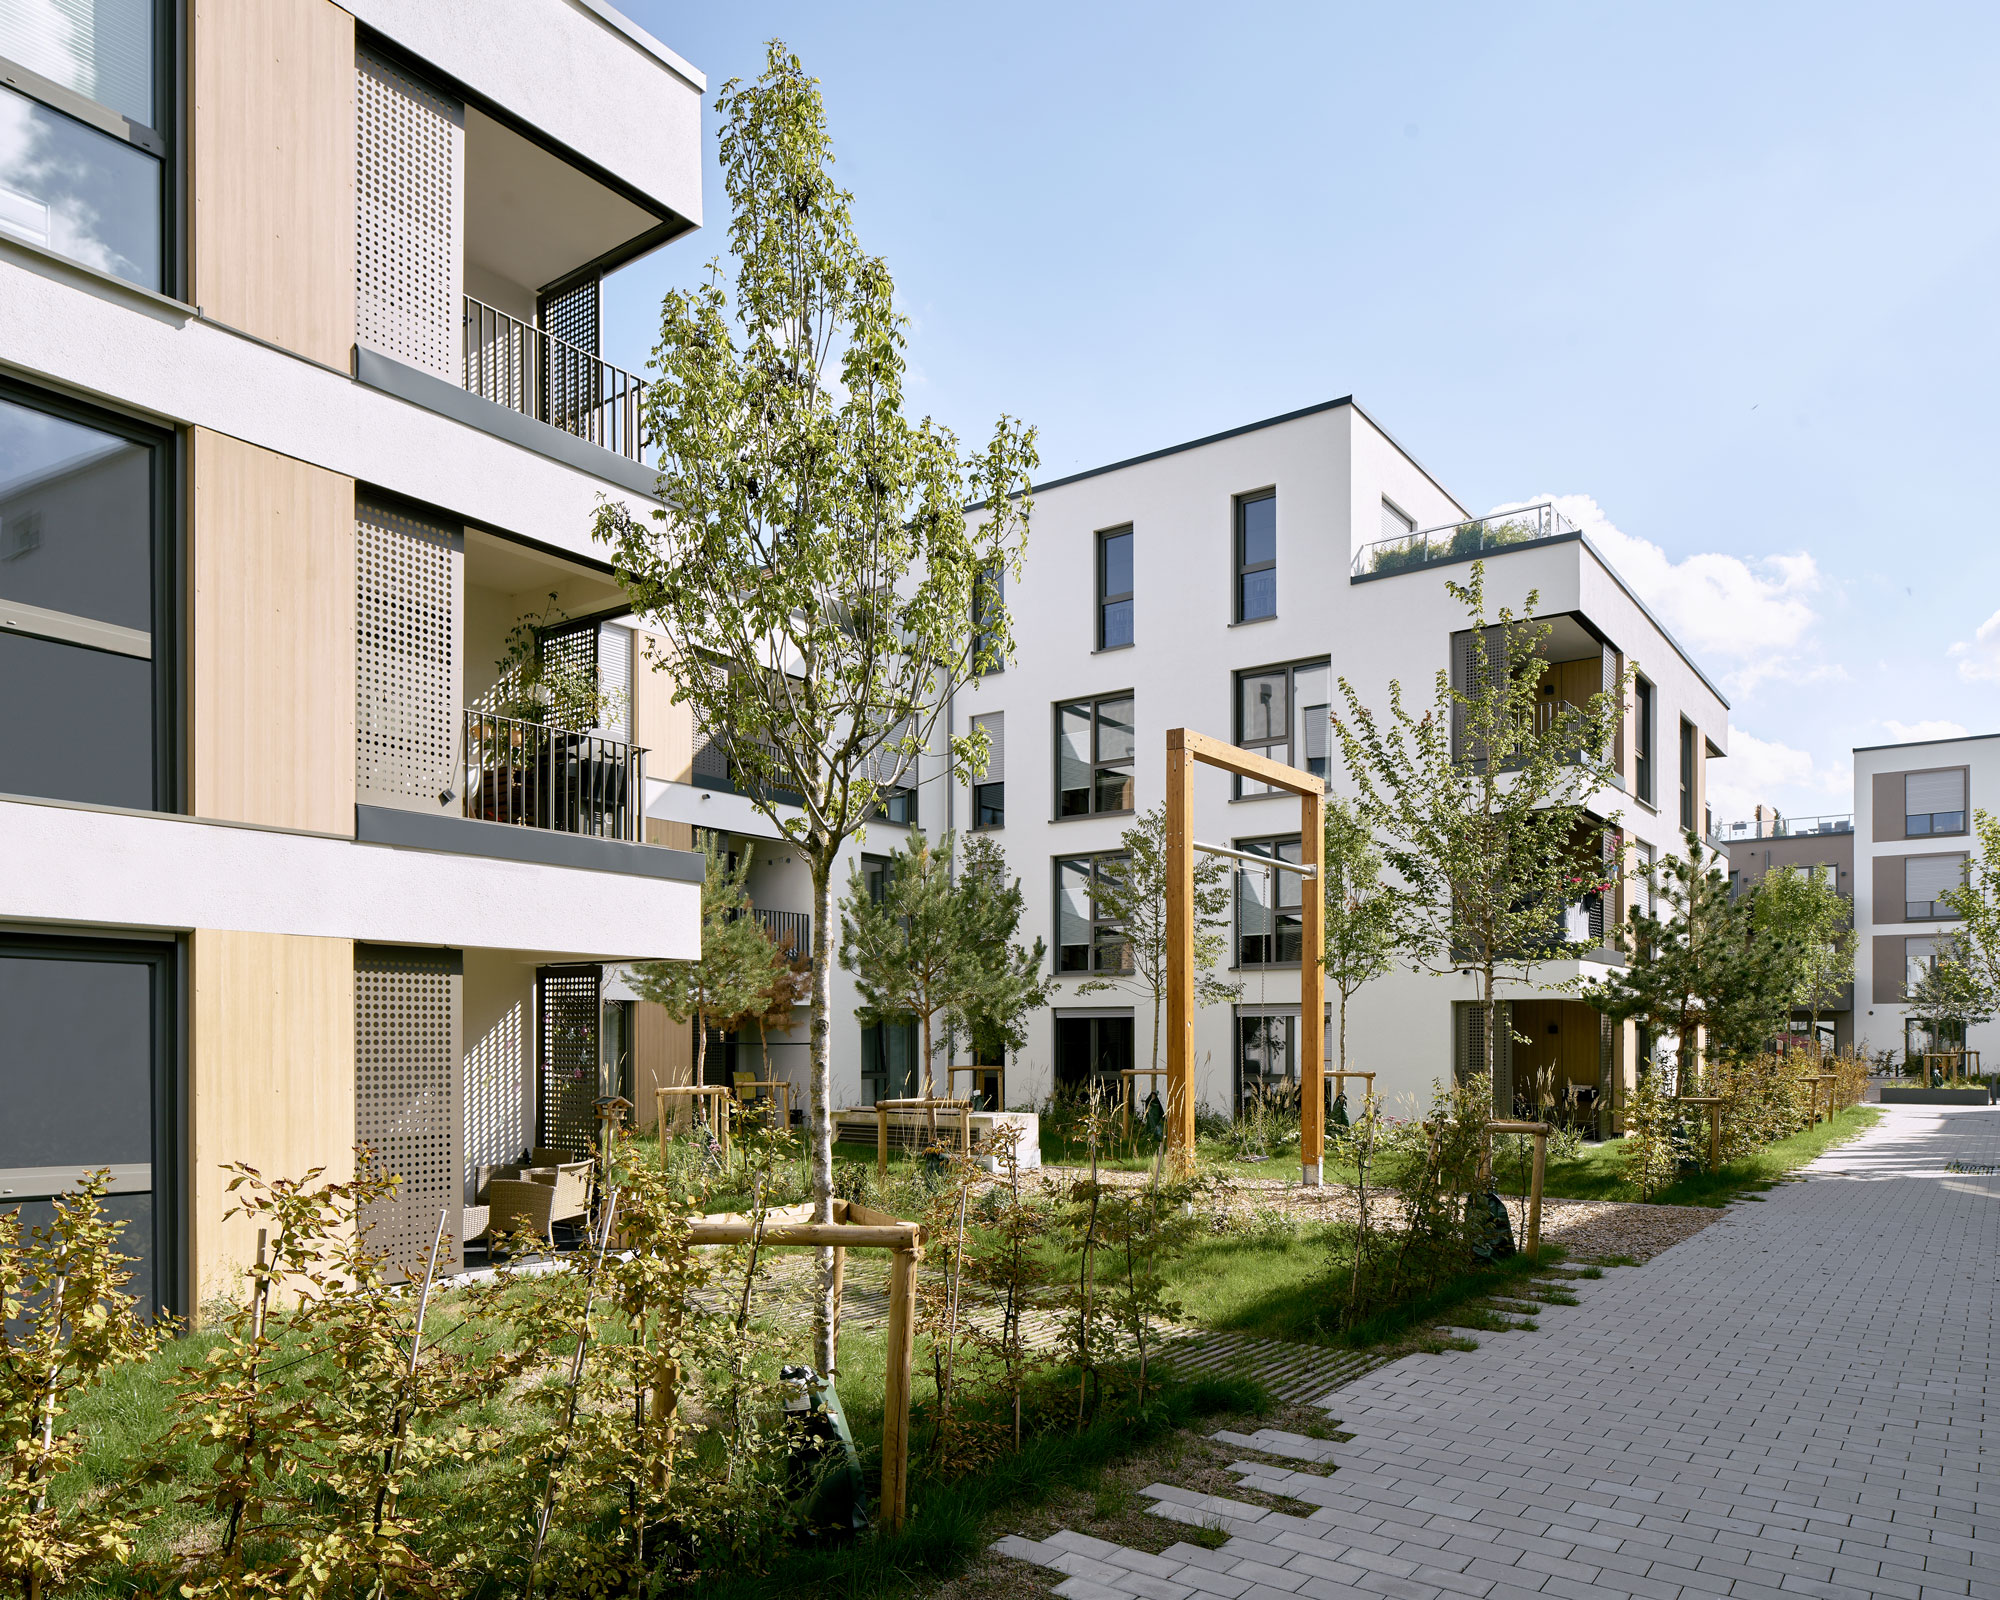 Neuebau einer Wohnbebauung an der Krimm, Mainz